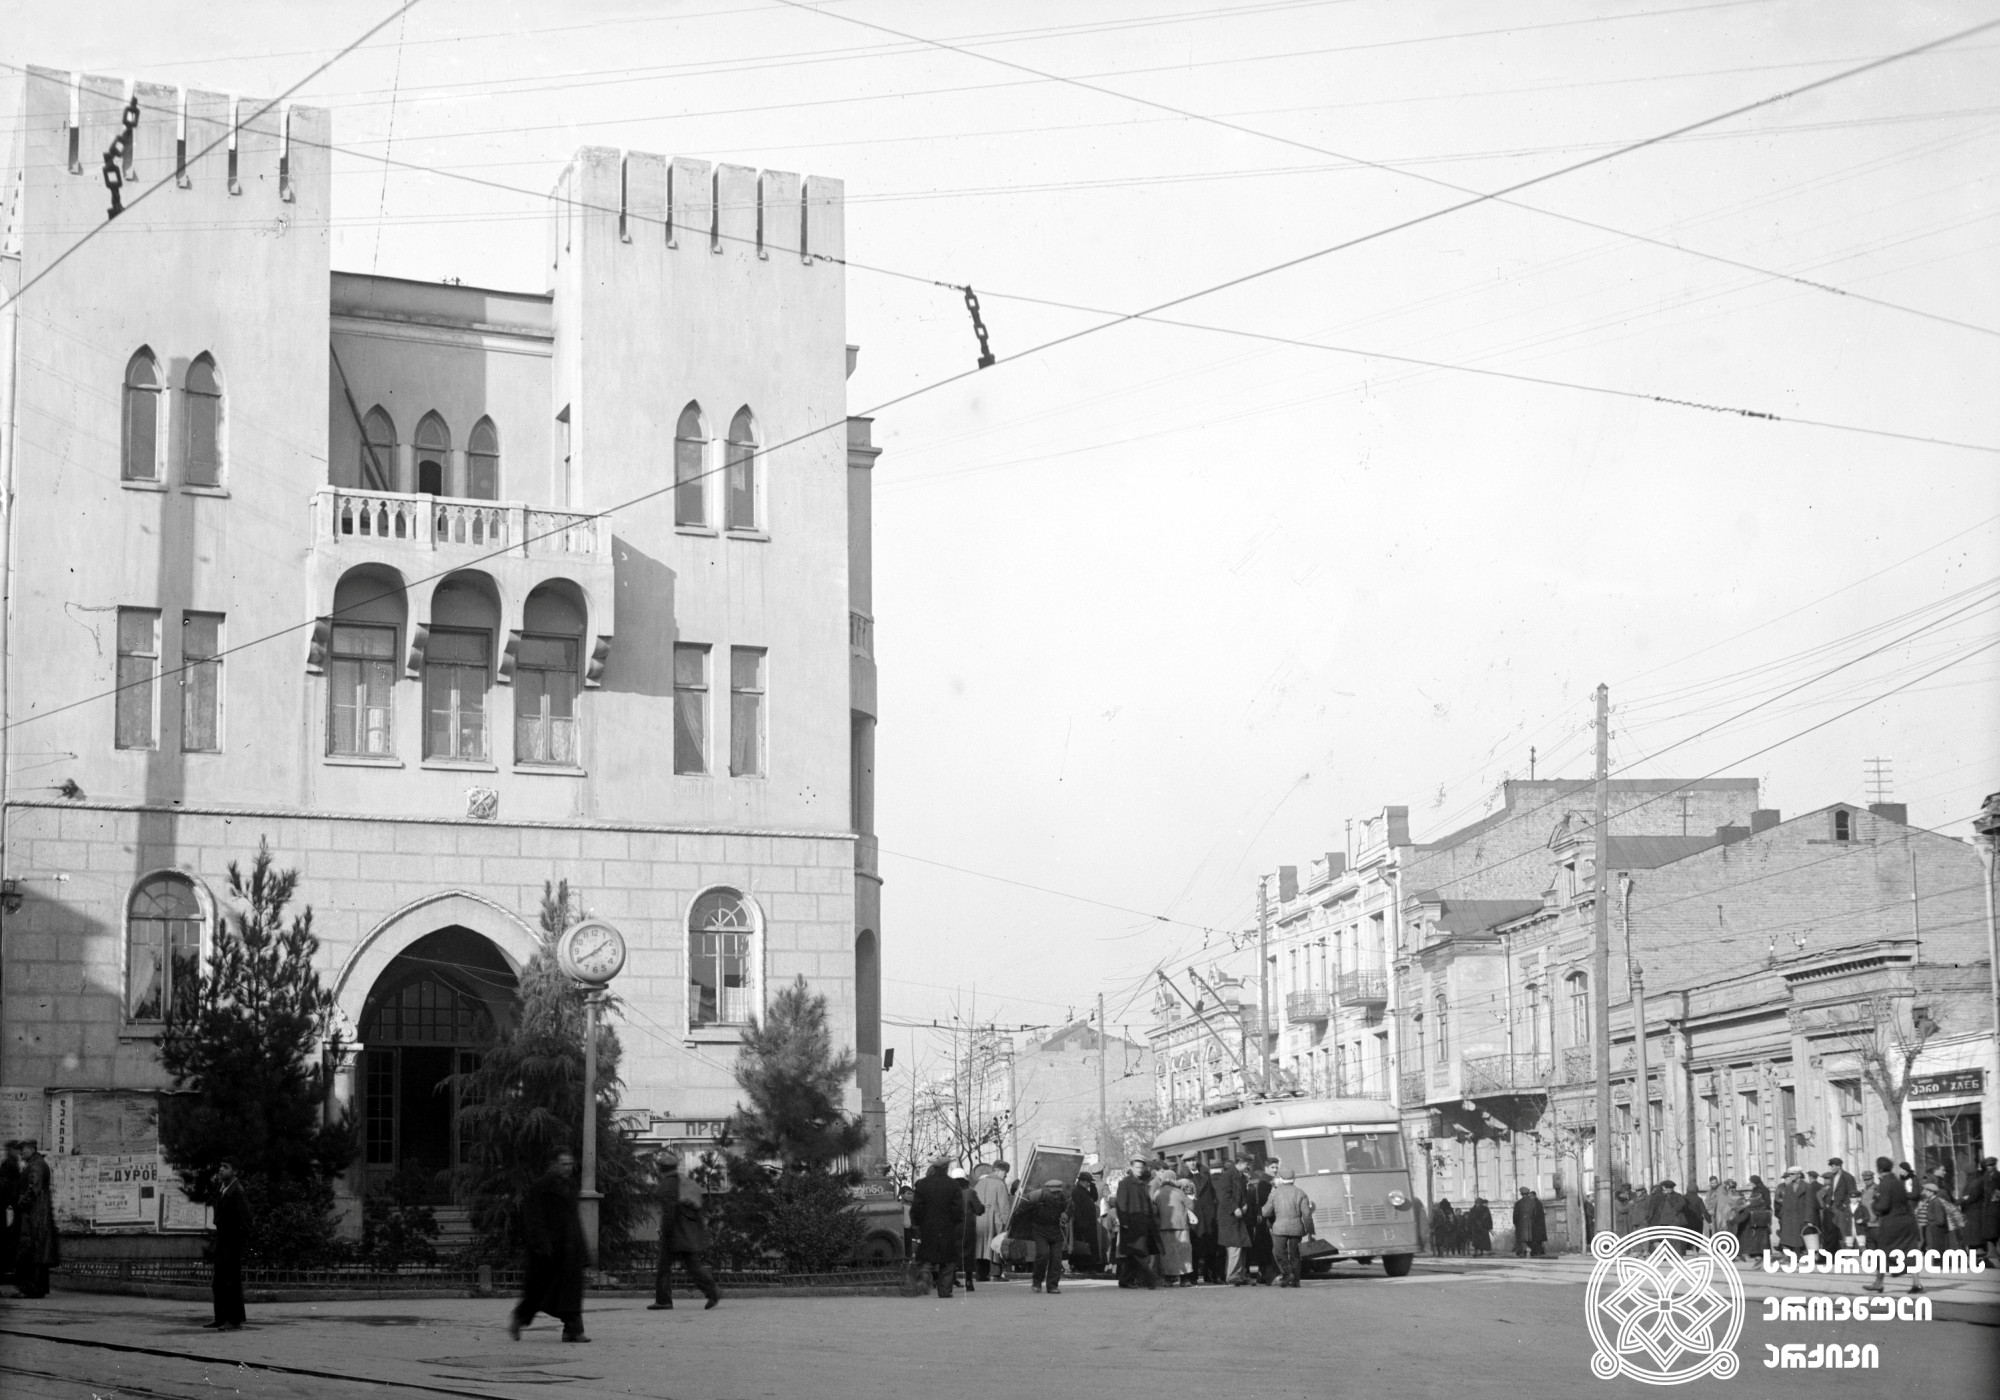 ლენინის გამზირისა და პეტრე მელიქიშვილის ქუჩის კუთხის შენობის ხედი (დღევანდელი ფილარმონიის მიმდებარედ). თბილისი. <br>ფოტო: ო. ბუდეშტსკი. 1938. <br>
View of the building in the corner of Lenin Avenue and Petre Melikishvili Street (today Tbilisi Concert Hall area). Tbilisi. <br>Photo by O. Budeshtski. <br>1938.